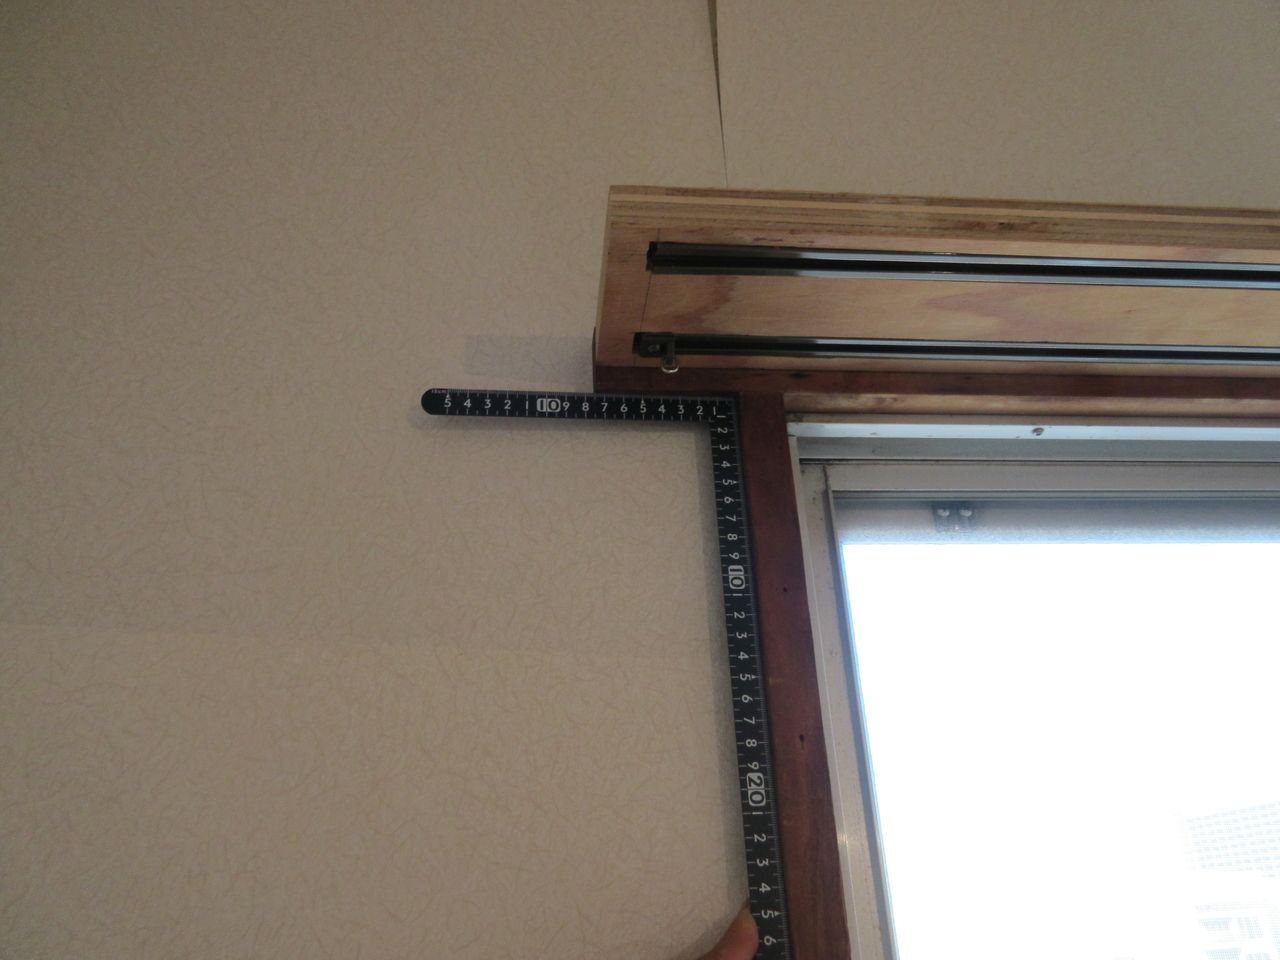 材の反りなどをチェックする時と同様に、サシガネを調べたい直角部分に当てることで簡単にチェックできます。上の写真は、木材をカットした端部が直角になっているのかをチェックしています。下の写真は、窓枠部分の接合部が直角になっているのかをチェックしています。